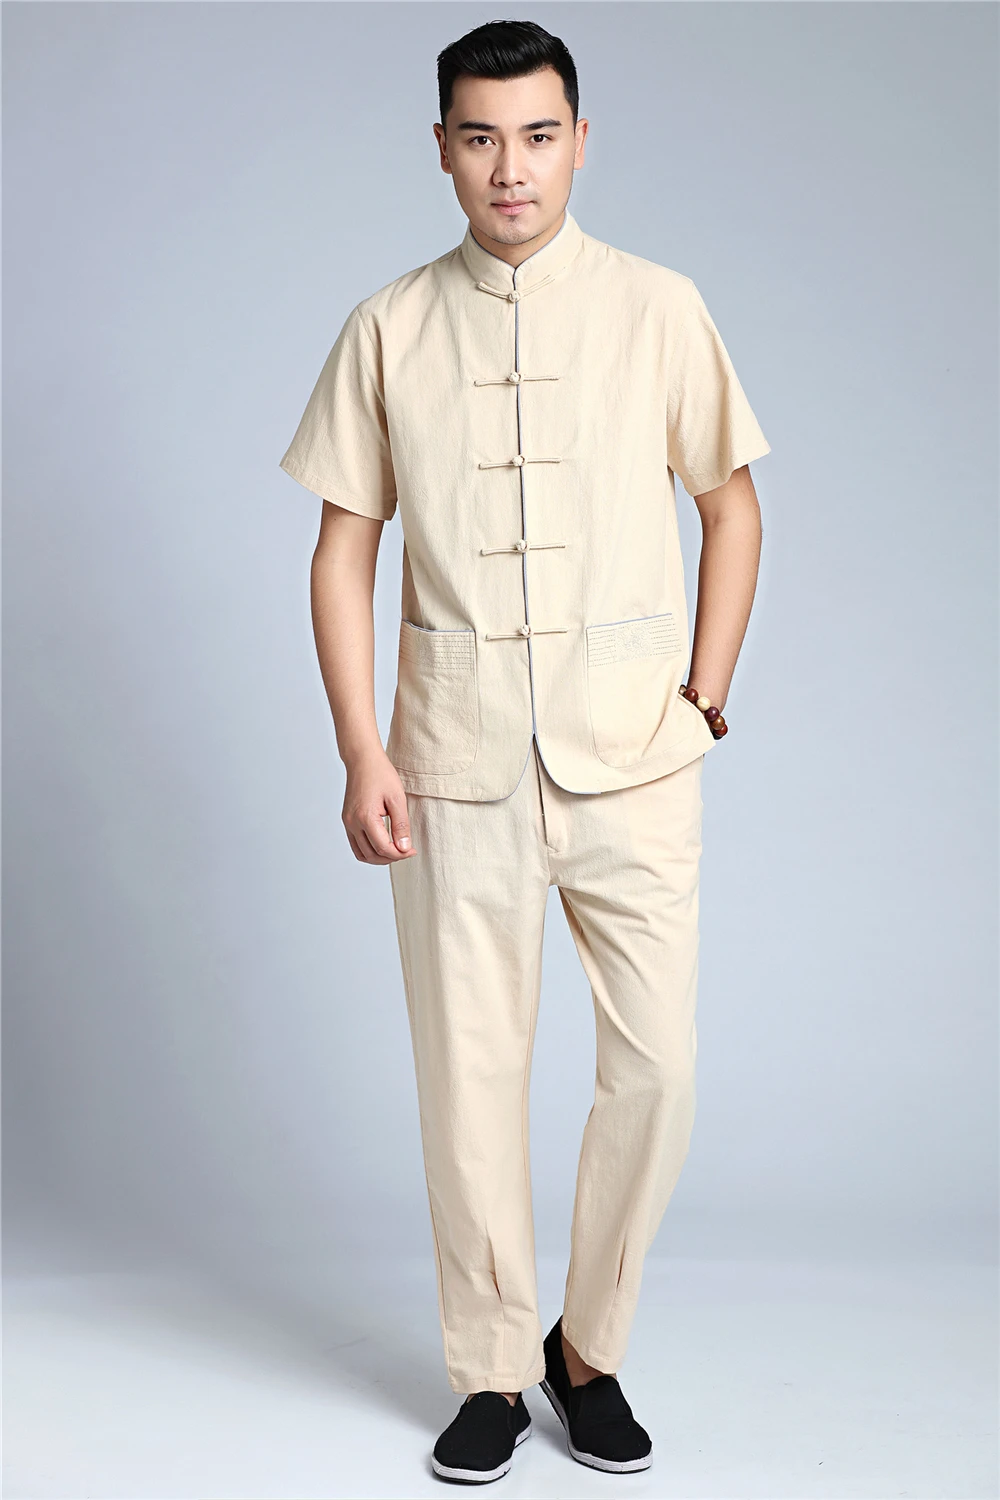 Шанхай история китайский стиль Тан костюм топ мужское хлопковое белье рубашка повседневное мужской воротник стойка костюмы свободные плюс размеры